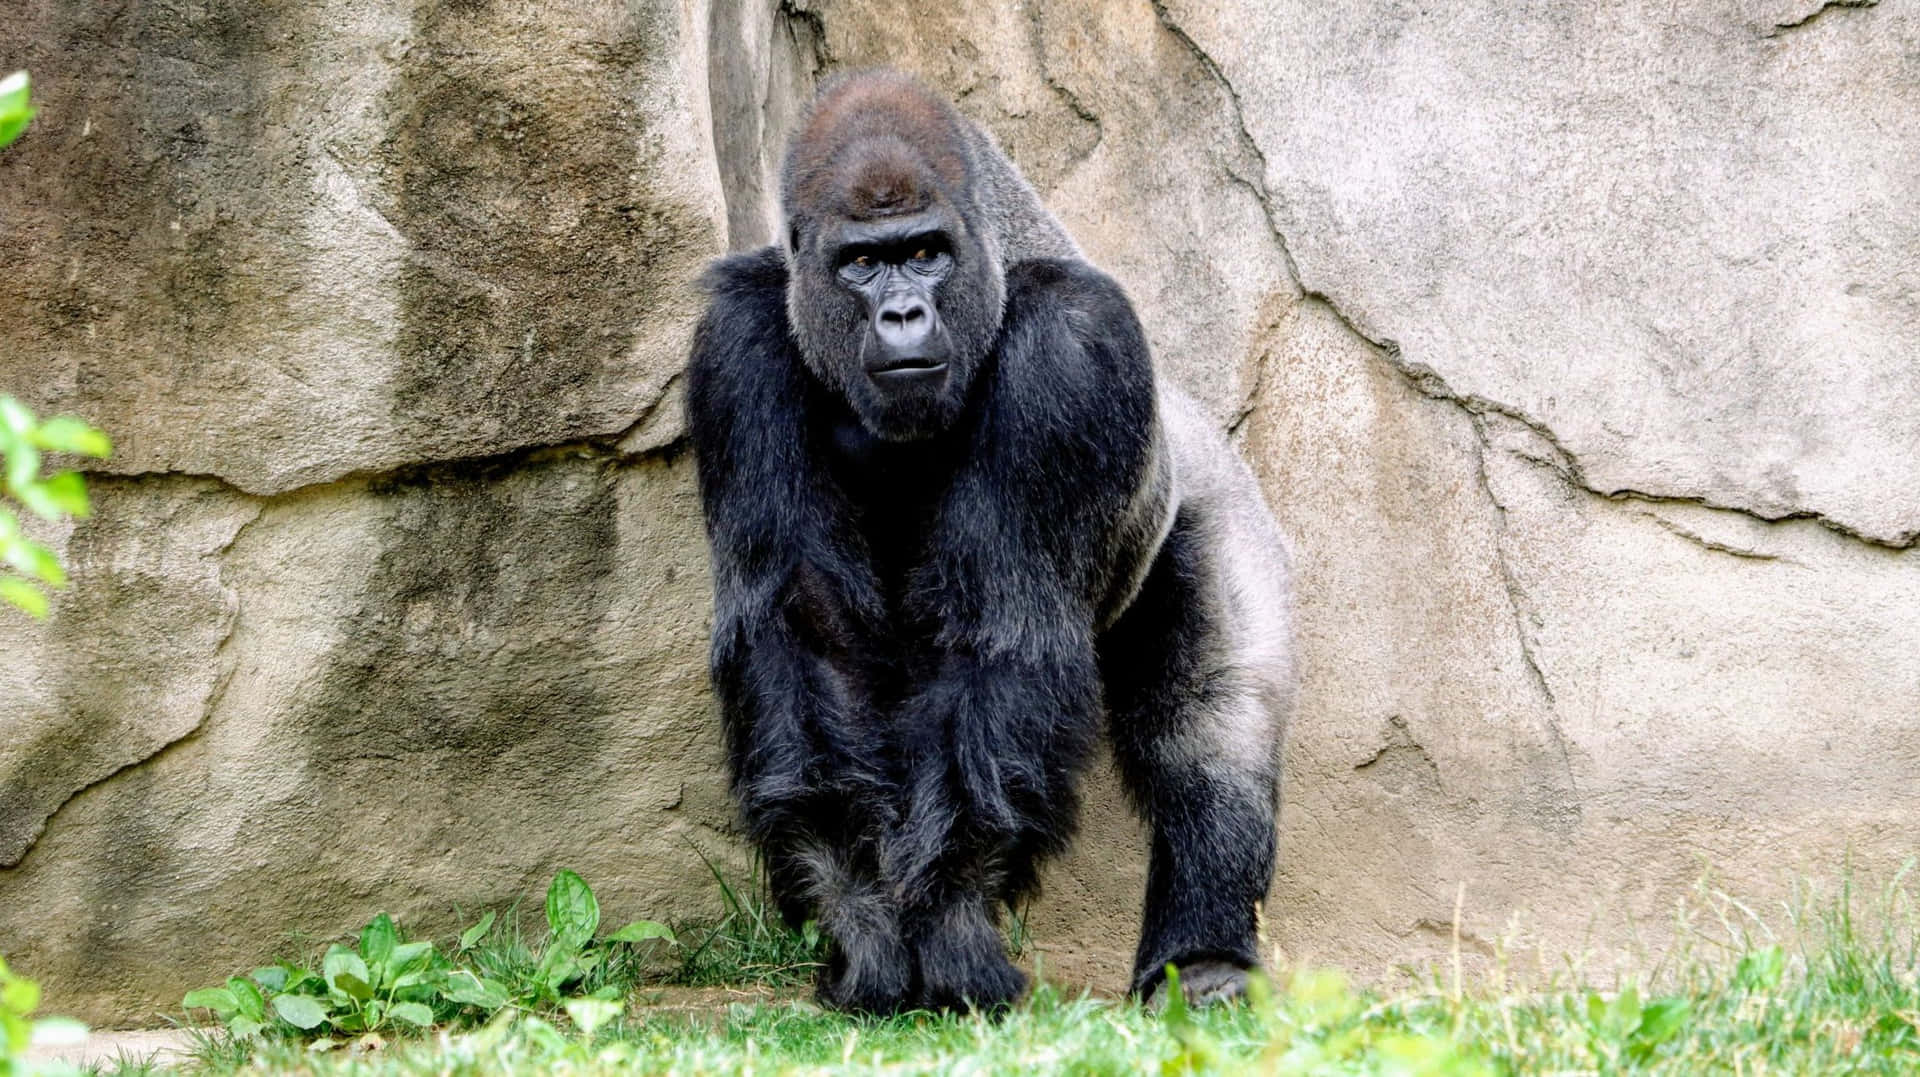 Enmajestætisk Silverback Gorilla, Liggende Afslappet I Sit Naturlige Regnskovshabitat.